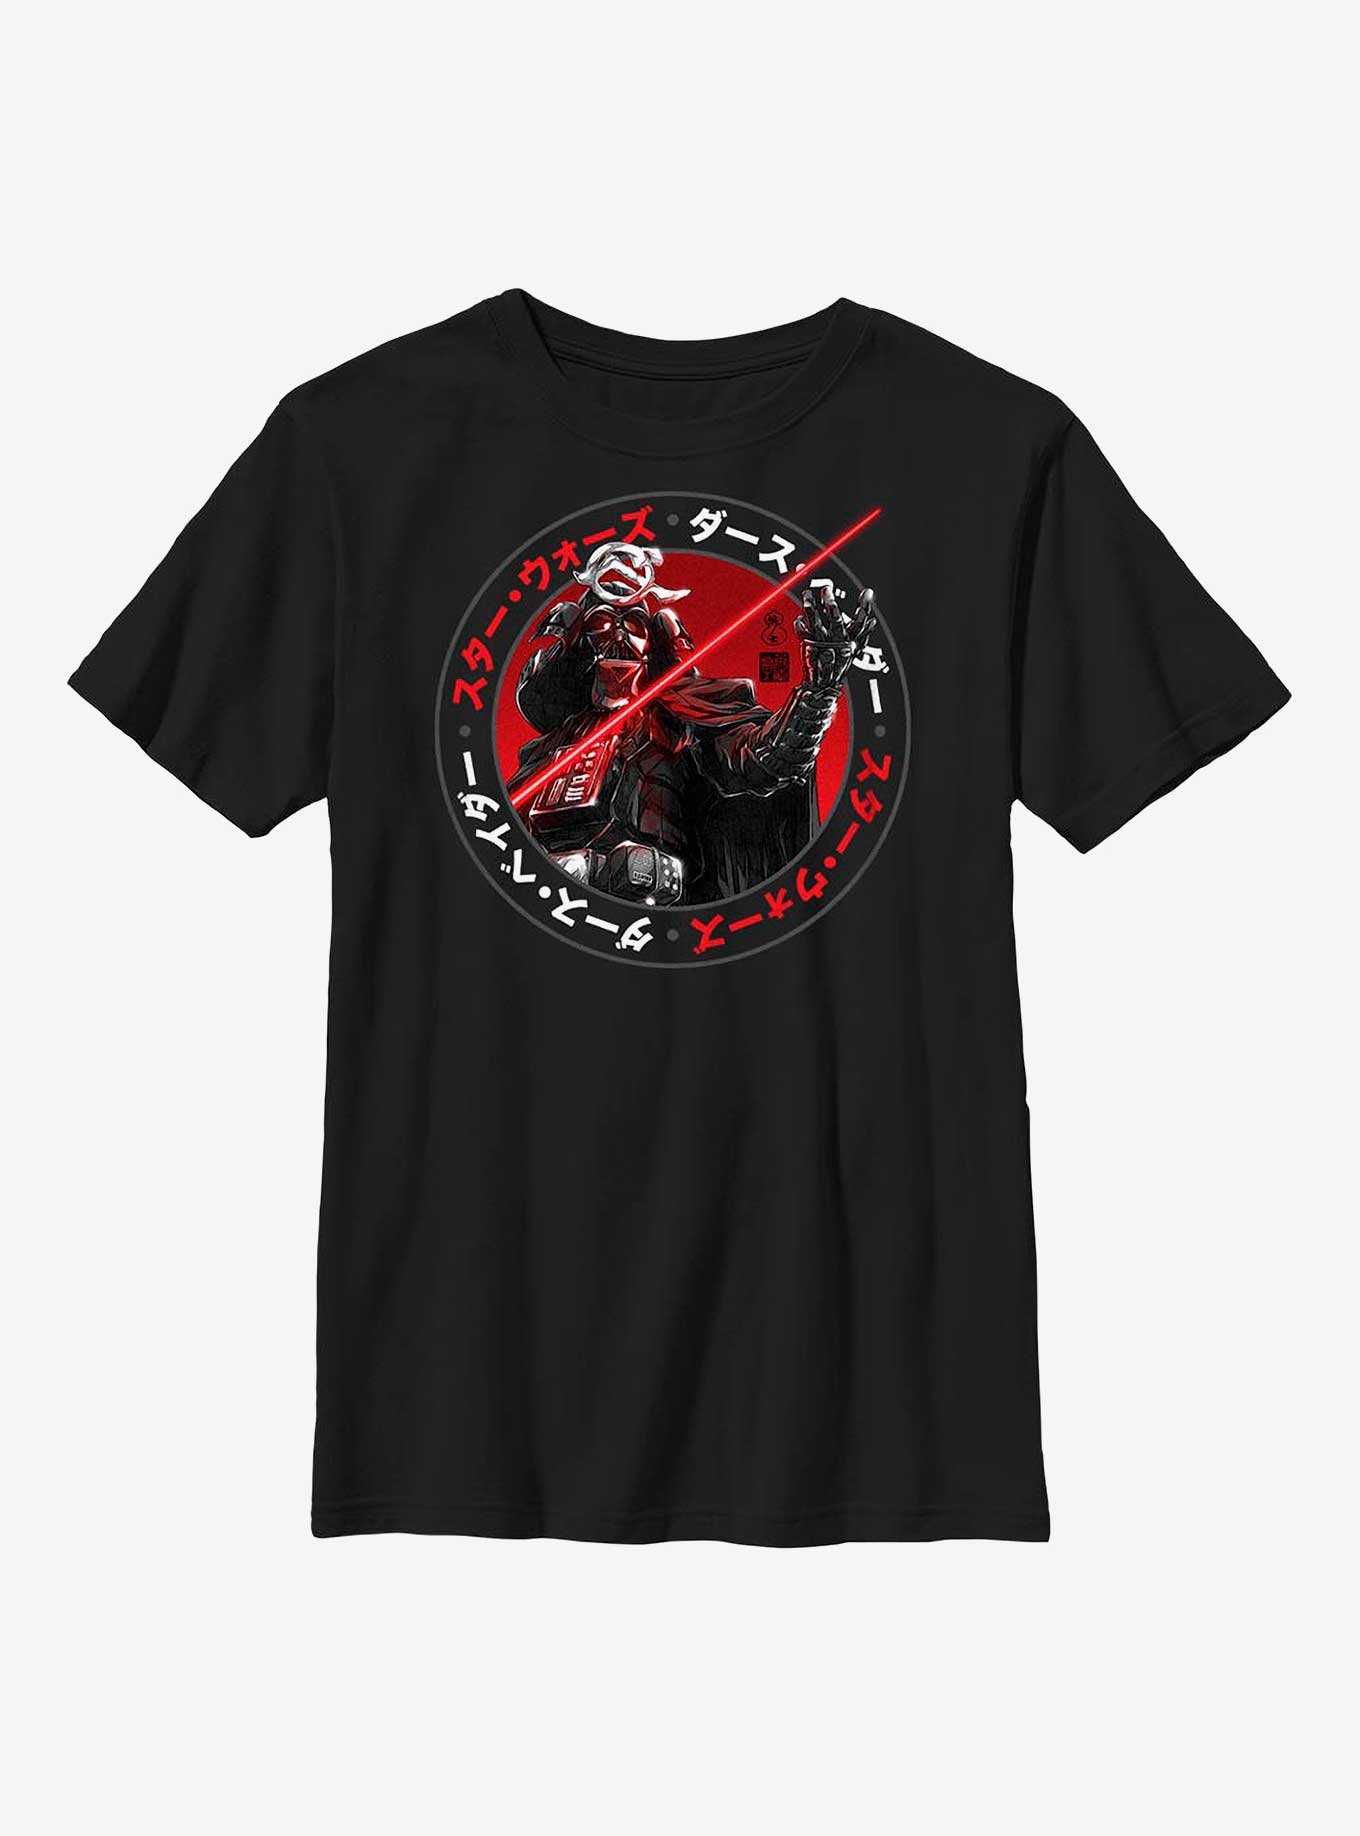 Star Wars: Visions Samurai Vader Youth T-Shirt, , hi-res